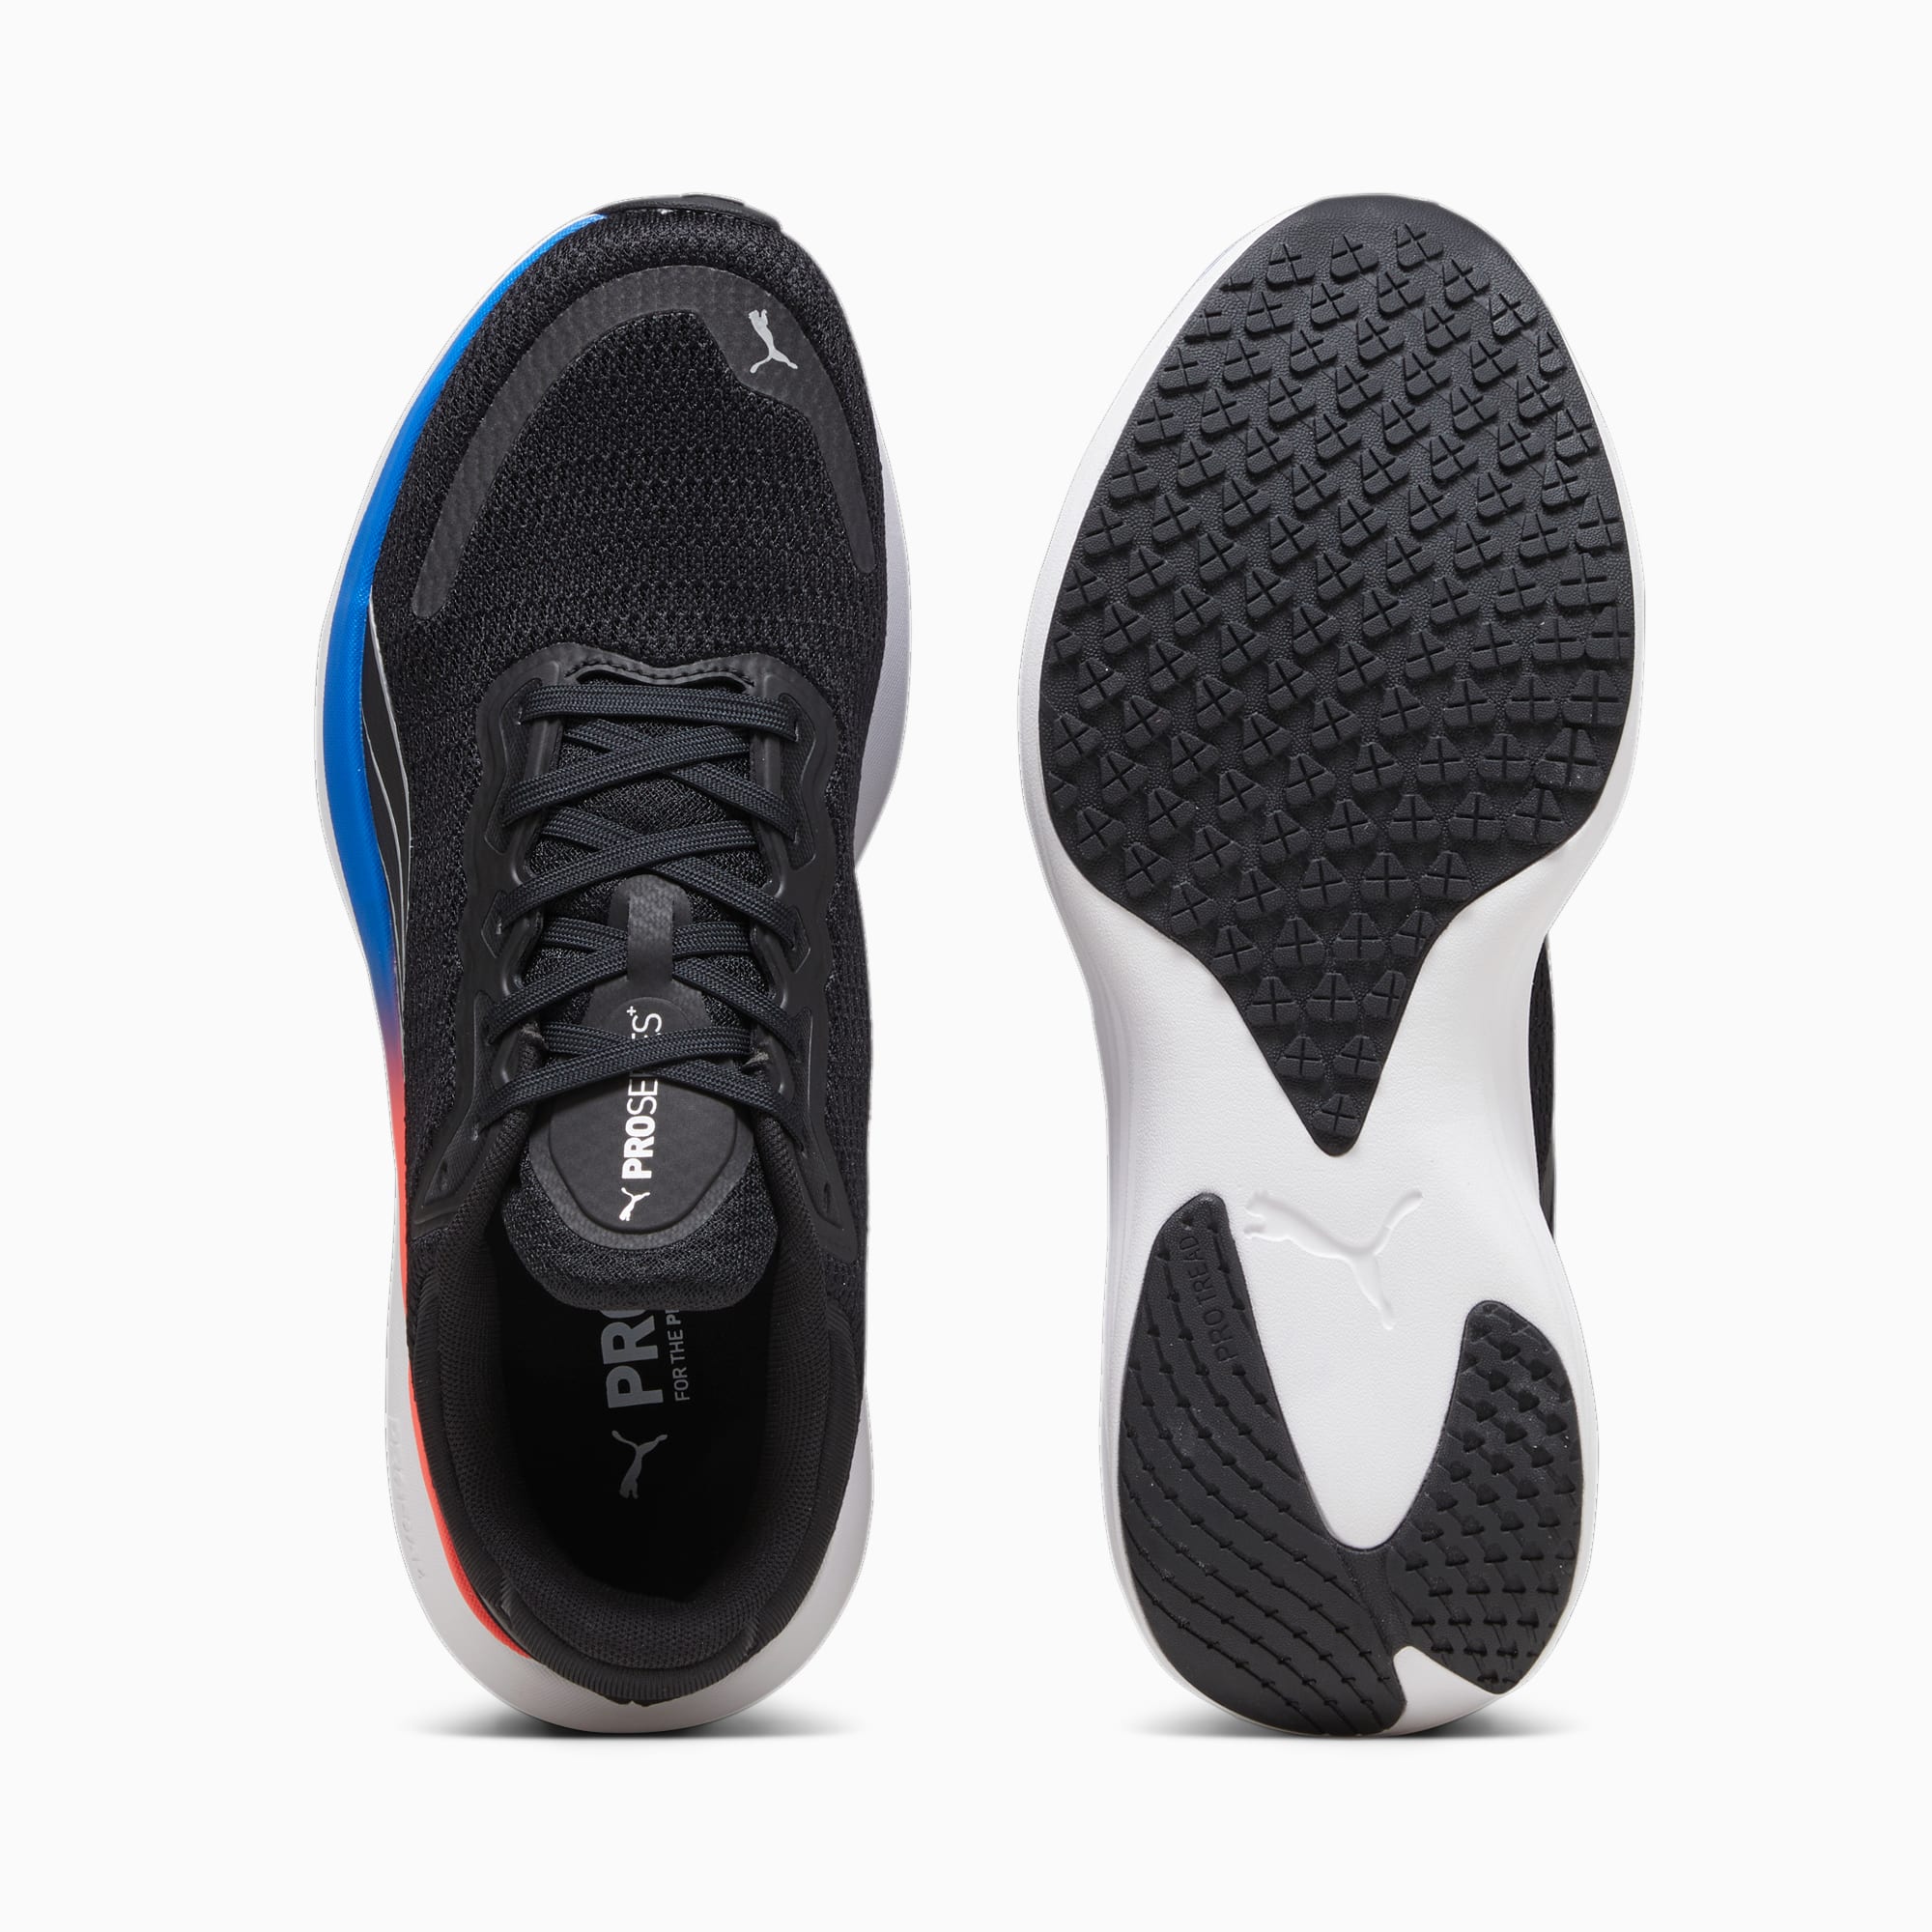 PUMA Chaussures De Running Scend Pro, Noir/Bleu